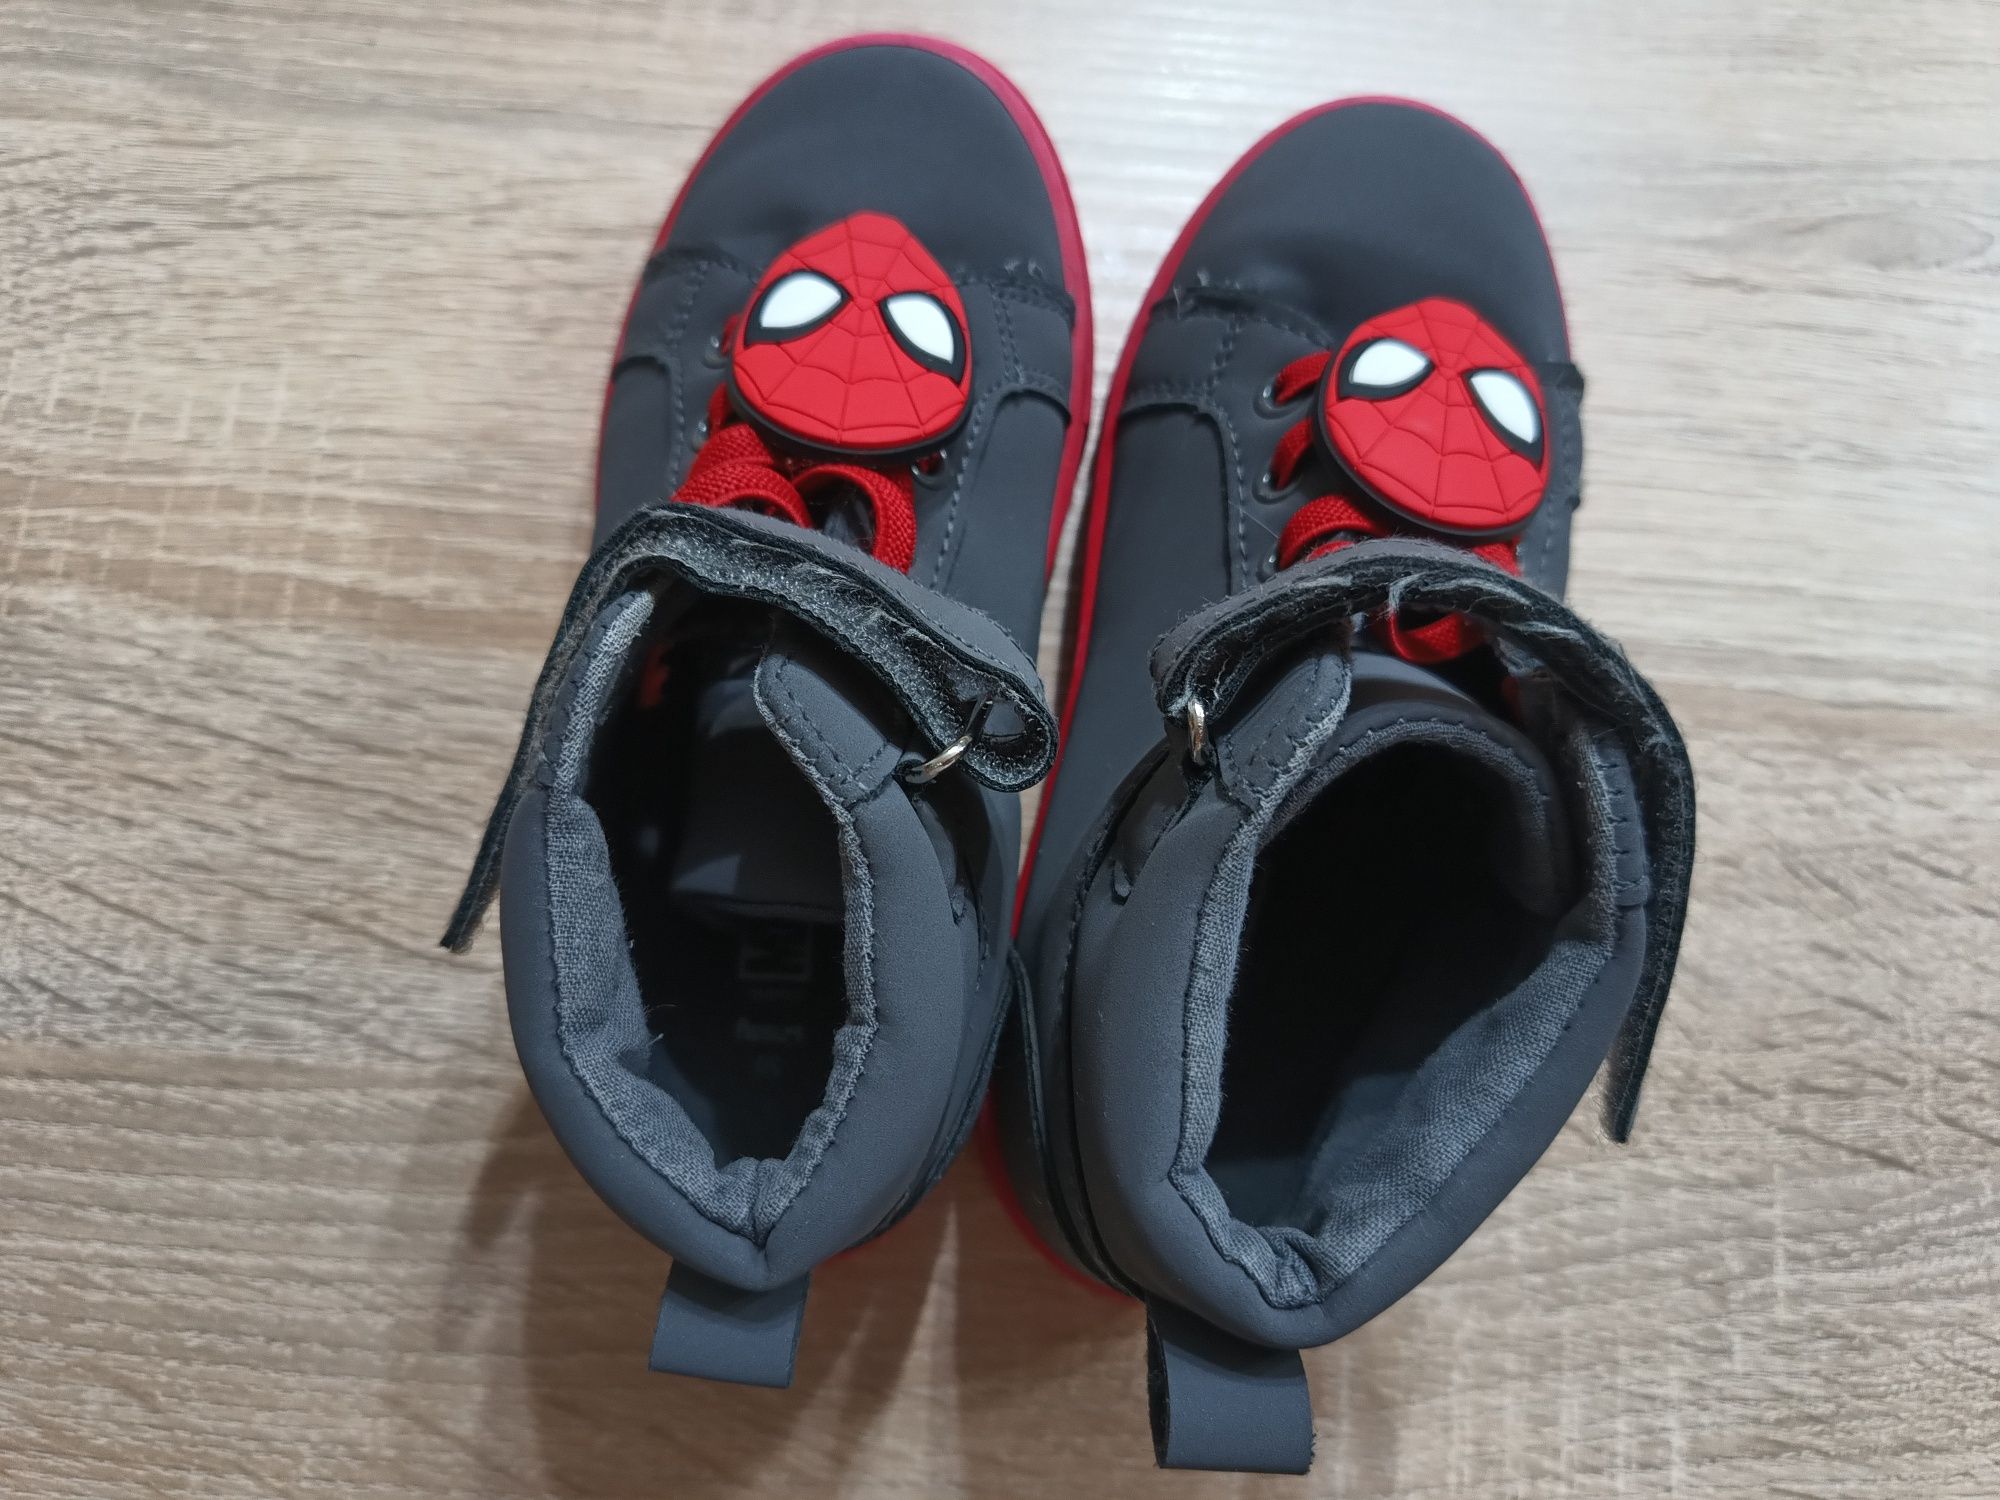 Buty chłopięce Spiderman r.30